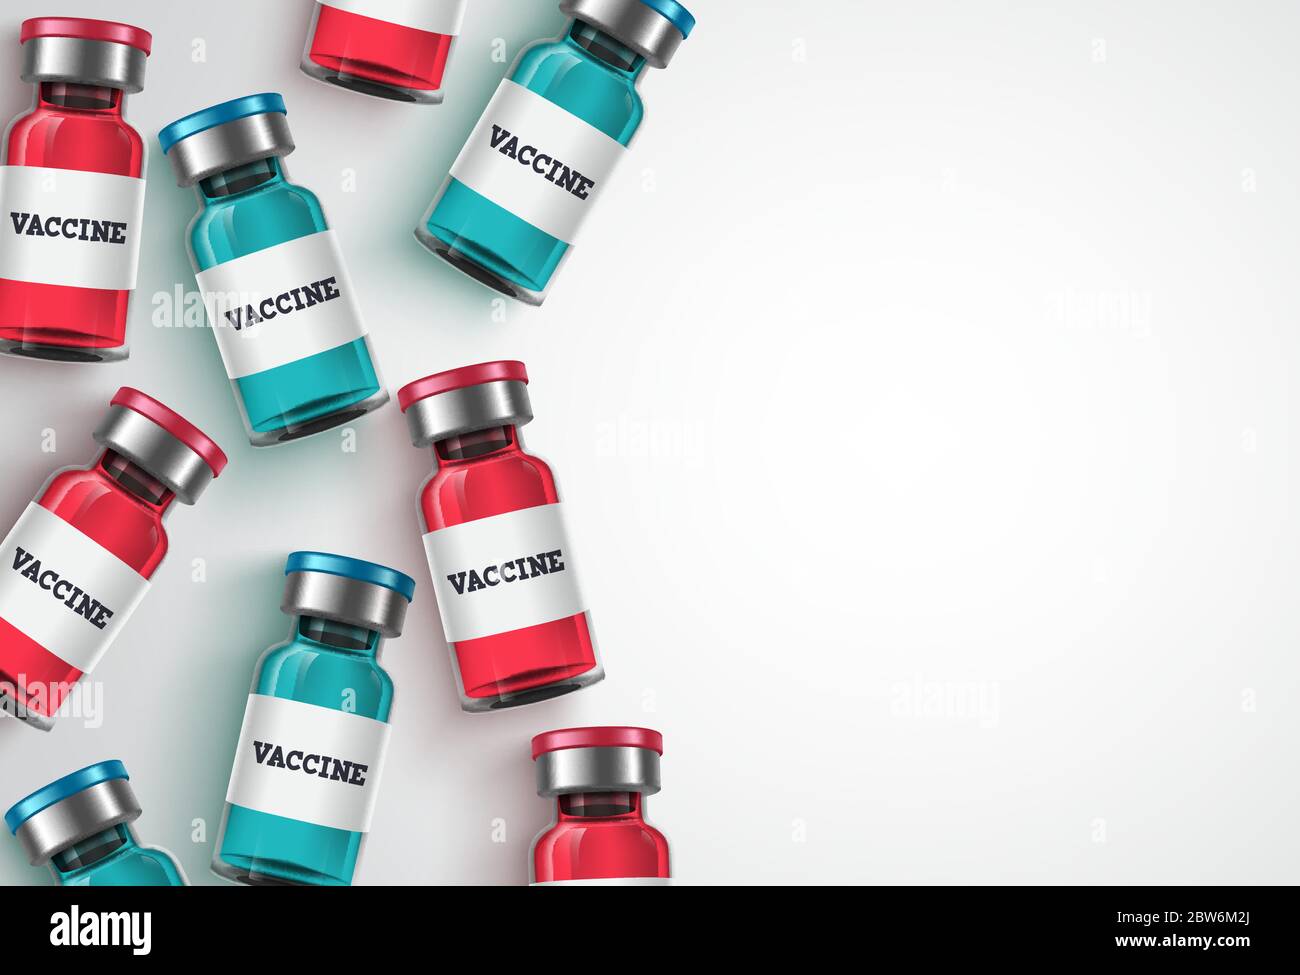 Hintergrundvorlage für Impfstoffflaschen. Impfflasche und weißer Leerraum für Text, Hintergrundvorlage für Covid-19 Coronavirus-Impfung Stock Vektor